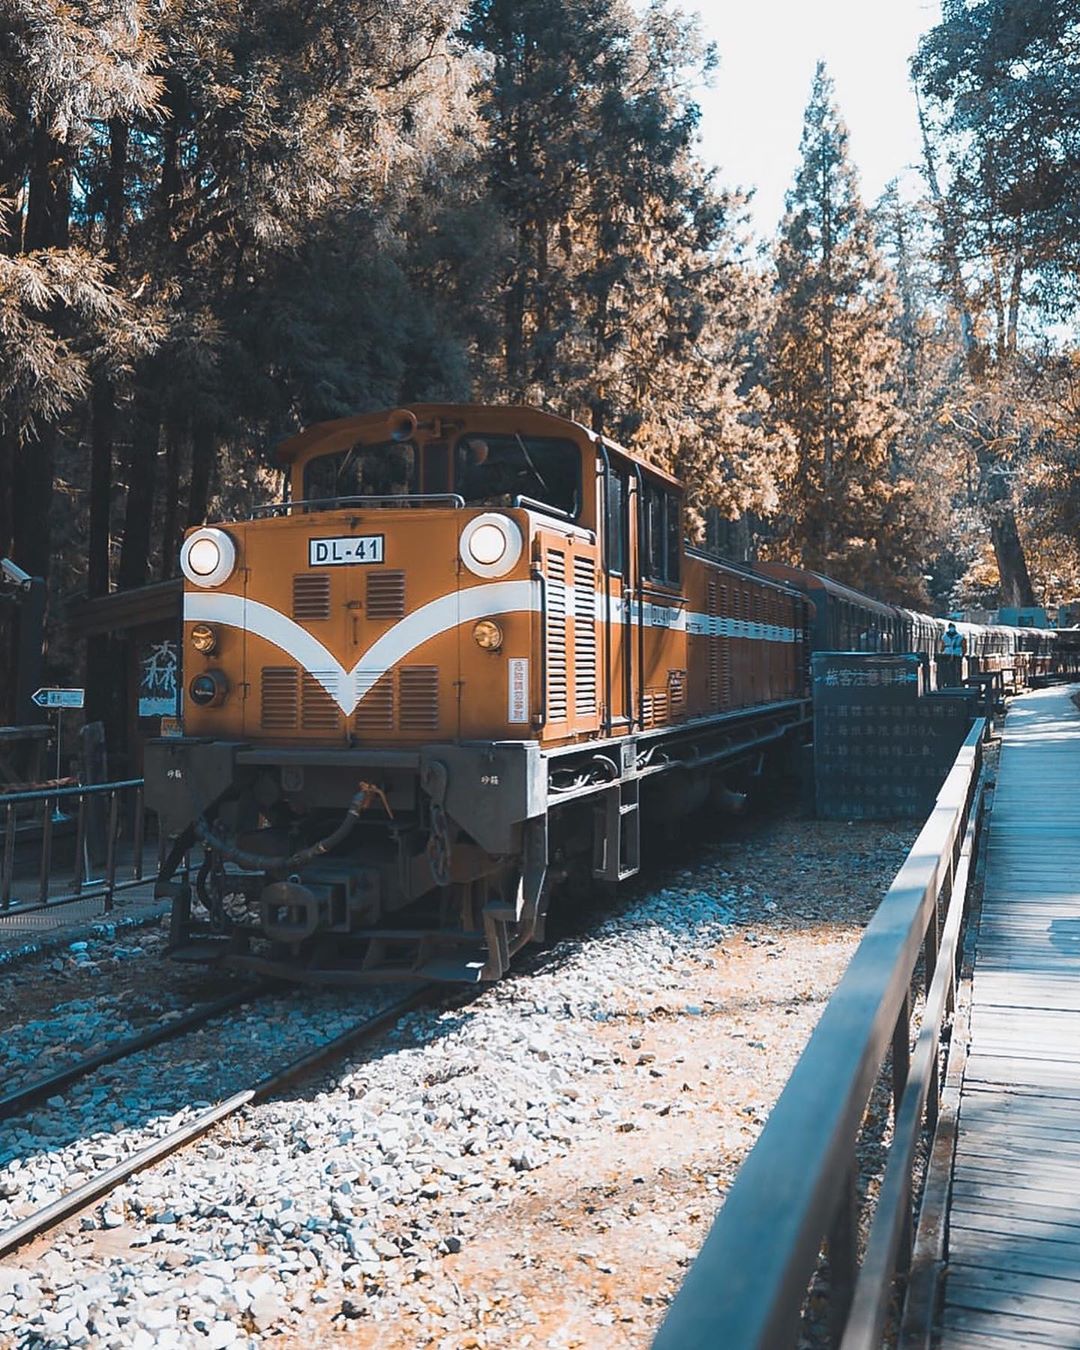 阿里山小火車的歷史比你我都還長所以來到阿里山一定要體驗小火車扣隆叩隆的聲音，跟一般鐵路火車很不一樣鳴笛的瞬間也是懷舊的美感-⠀⠀⠀...